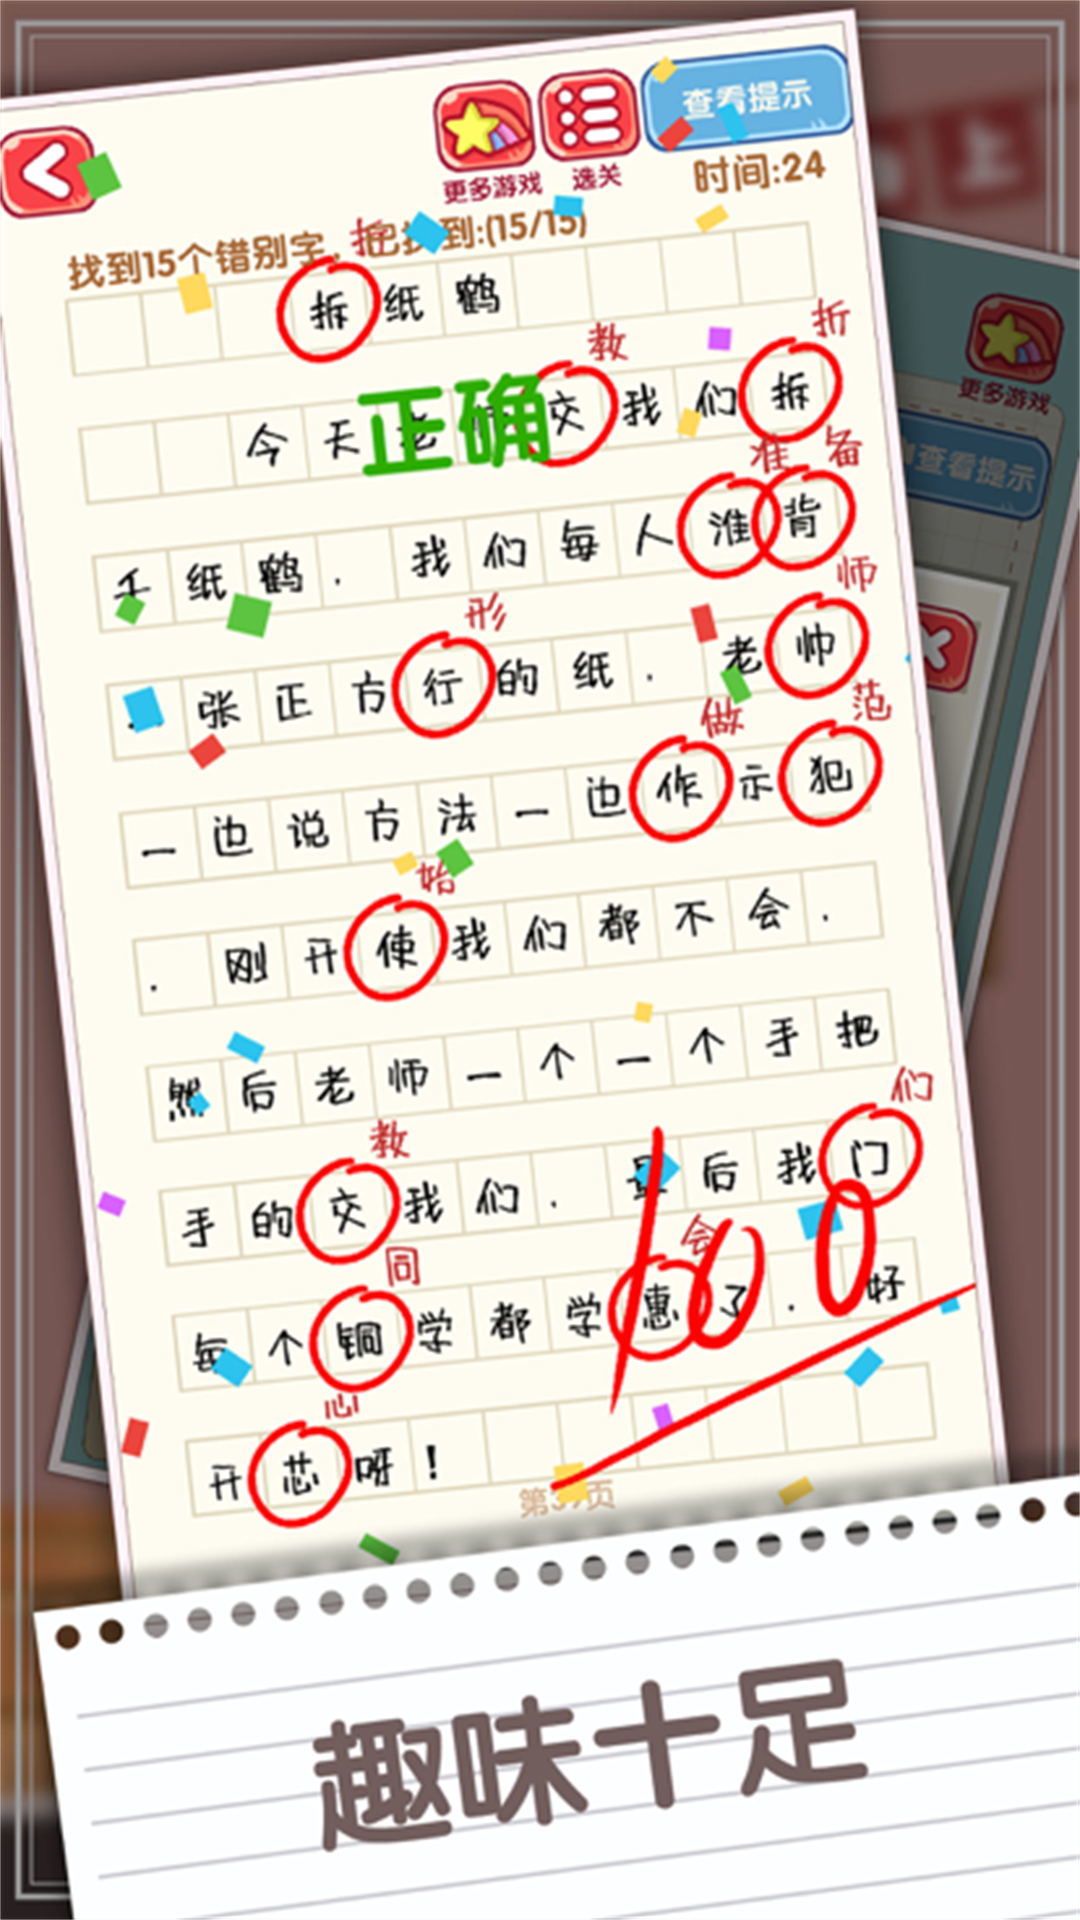 脑力节奏比拼上海怎样开发一款app